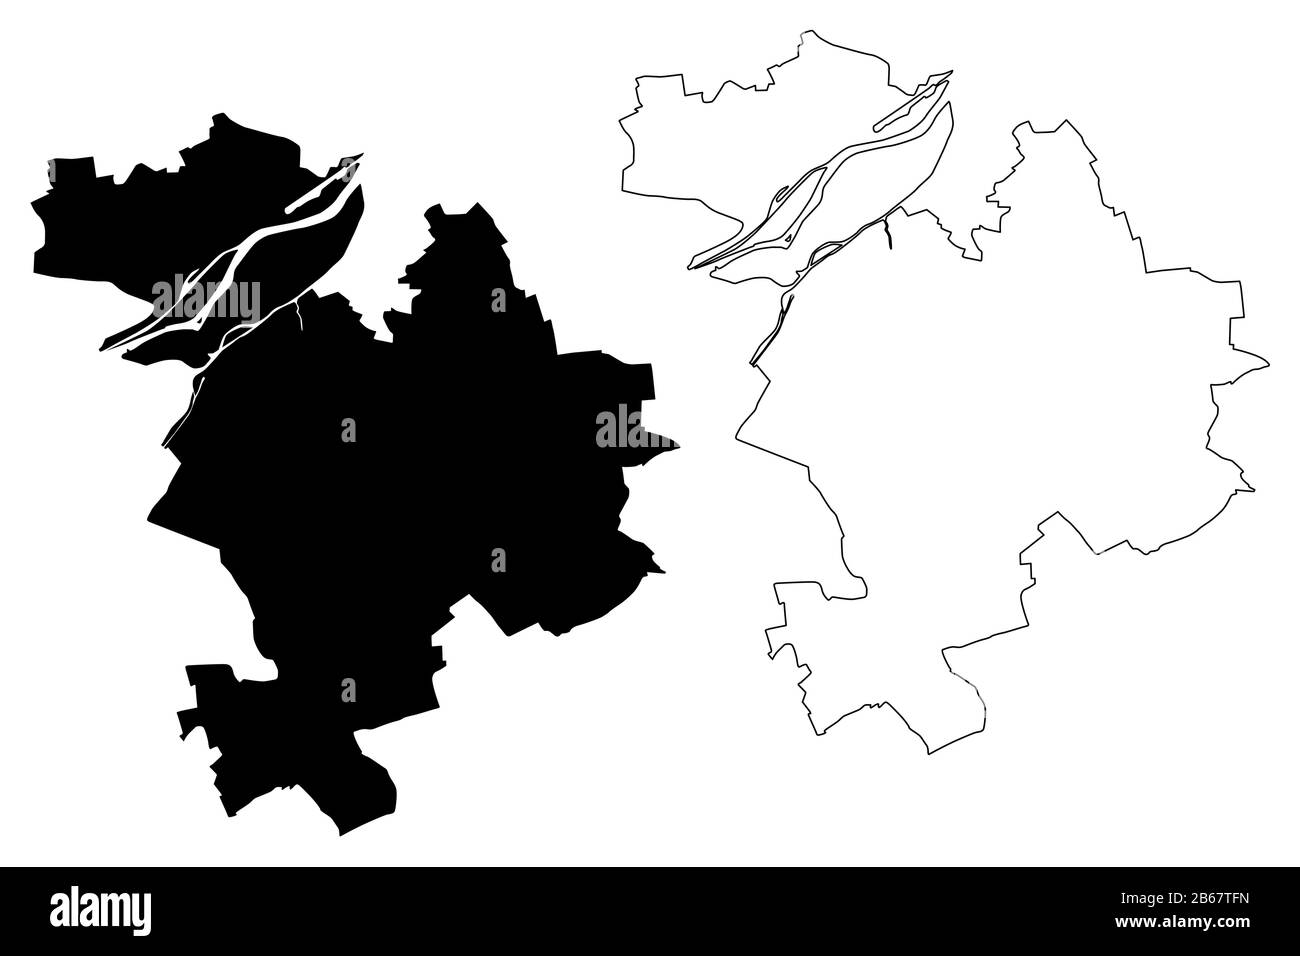 Metz City (République française, France) illustration vectorielle de la carte, esquisse de griffonnage carte de la ville de Metz Illustration de Vecteur